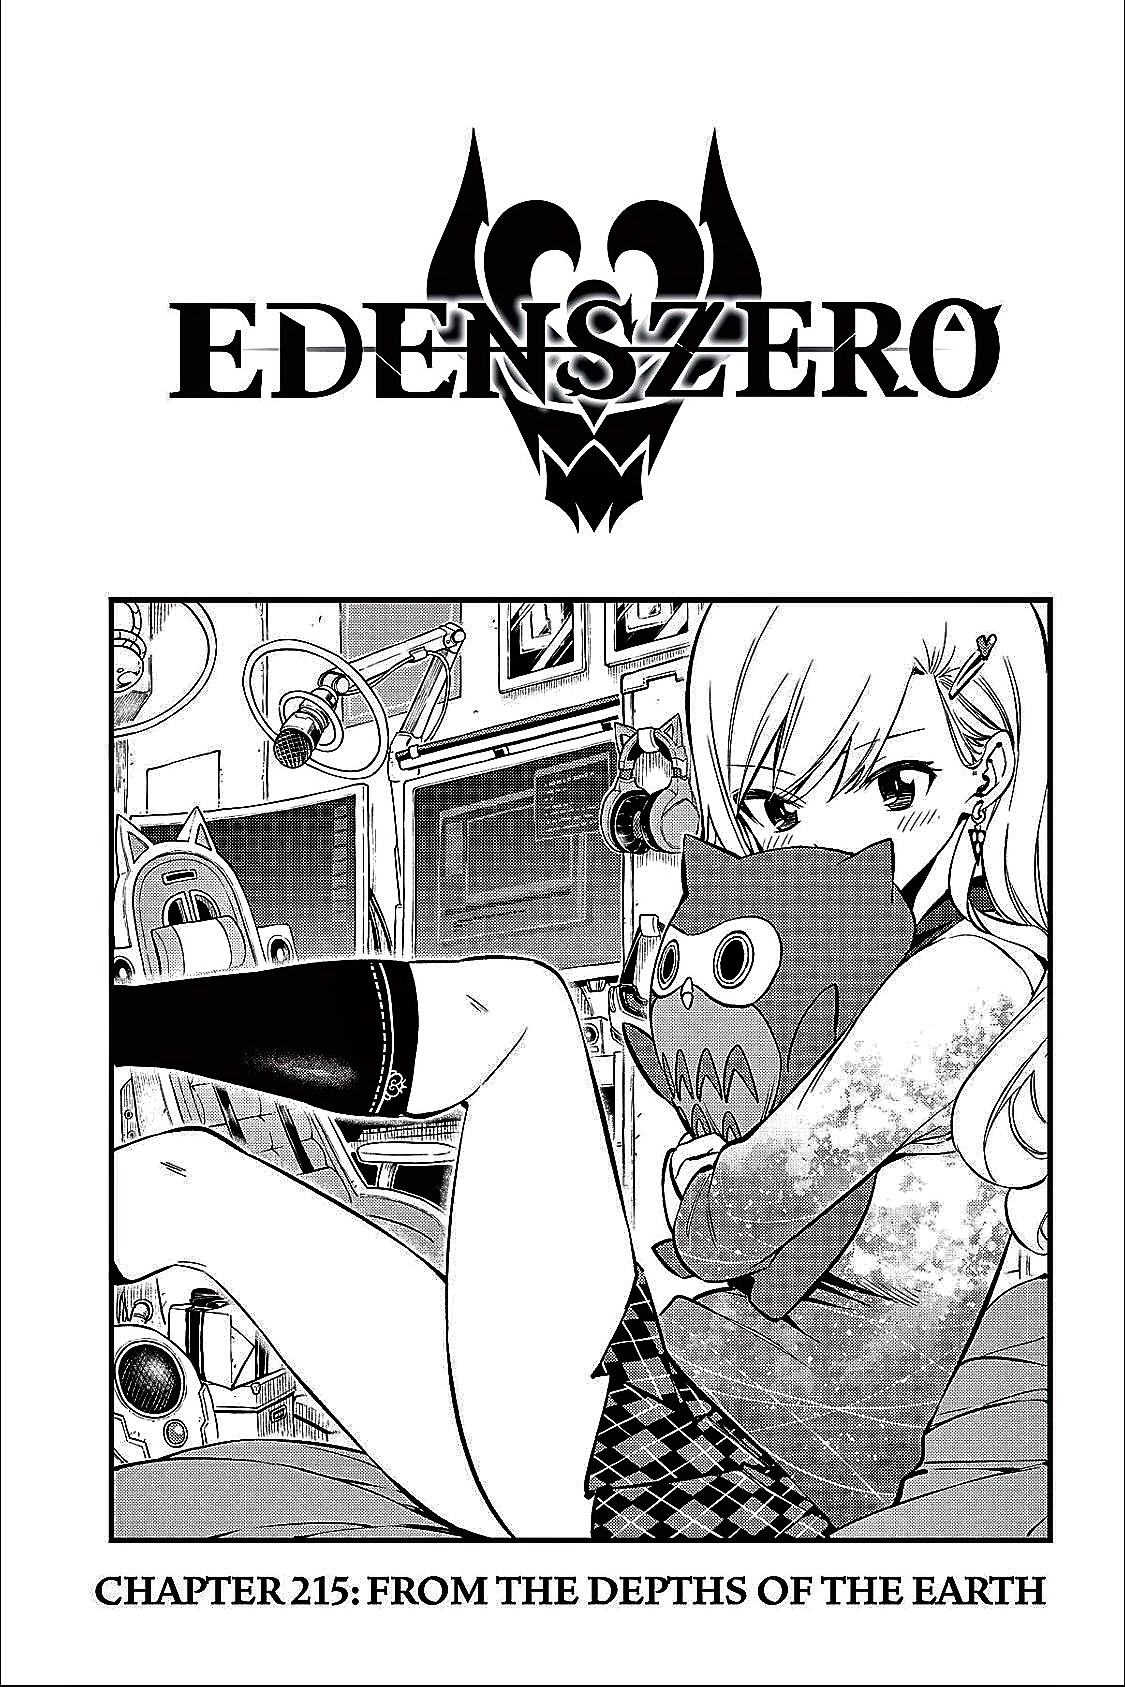 The True Enemy Appears!! Edens Zero Chapter 215 BREAKDOWN